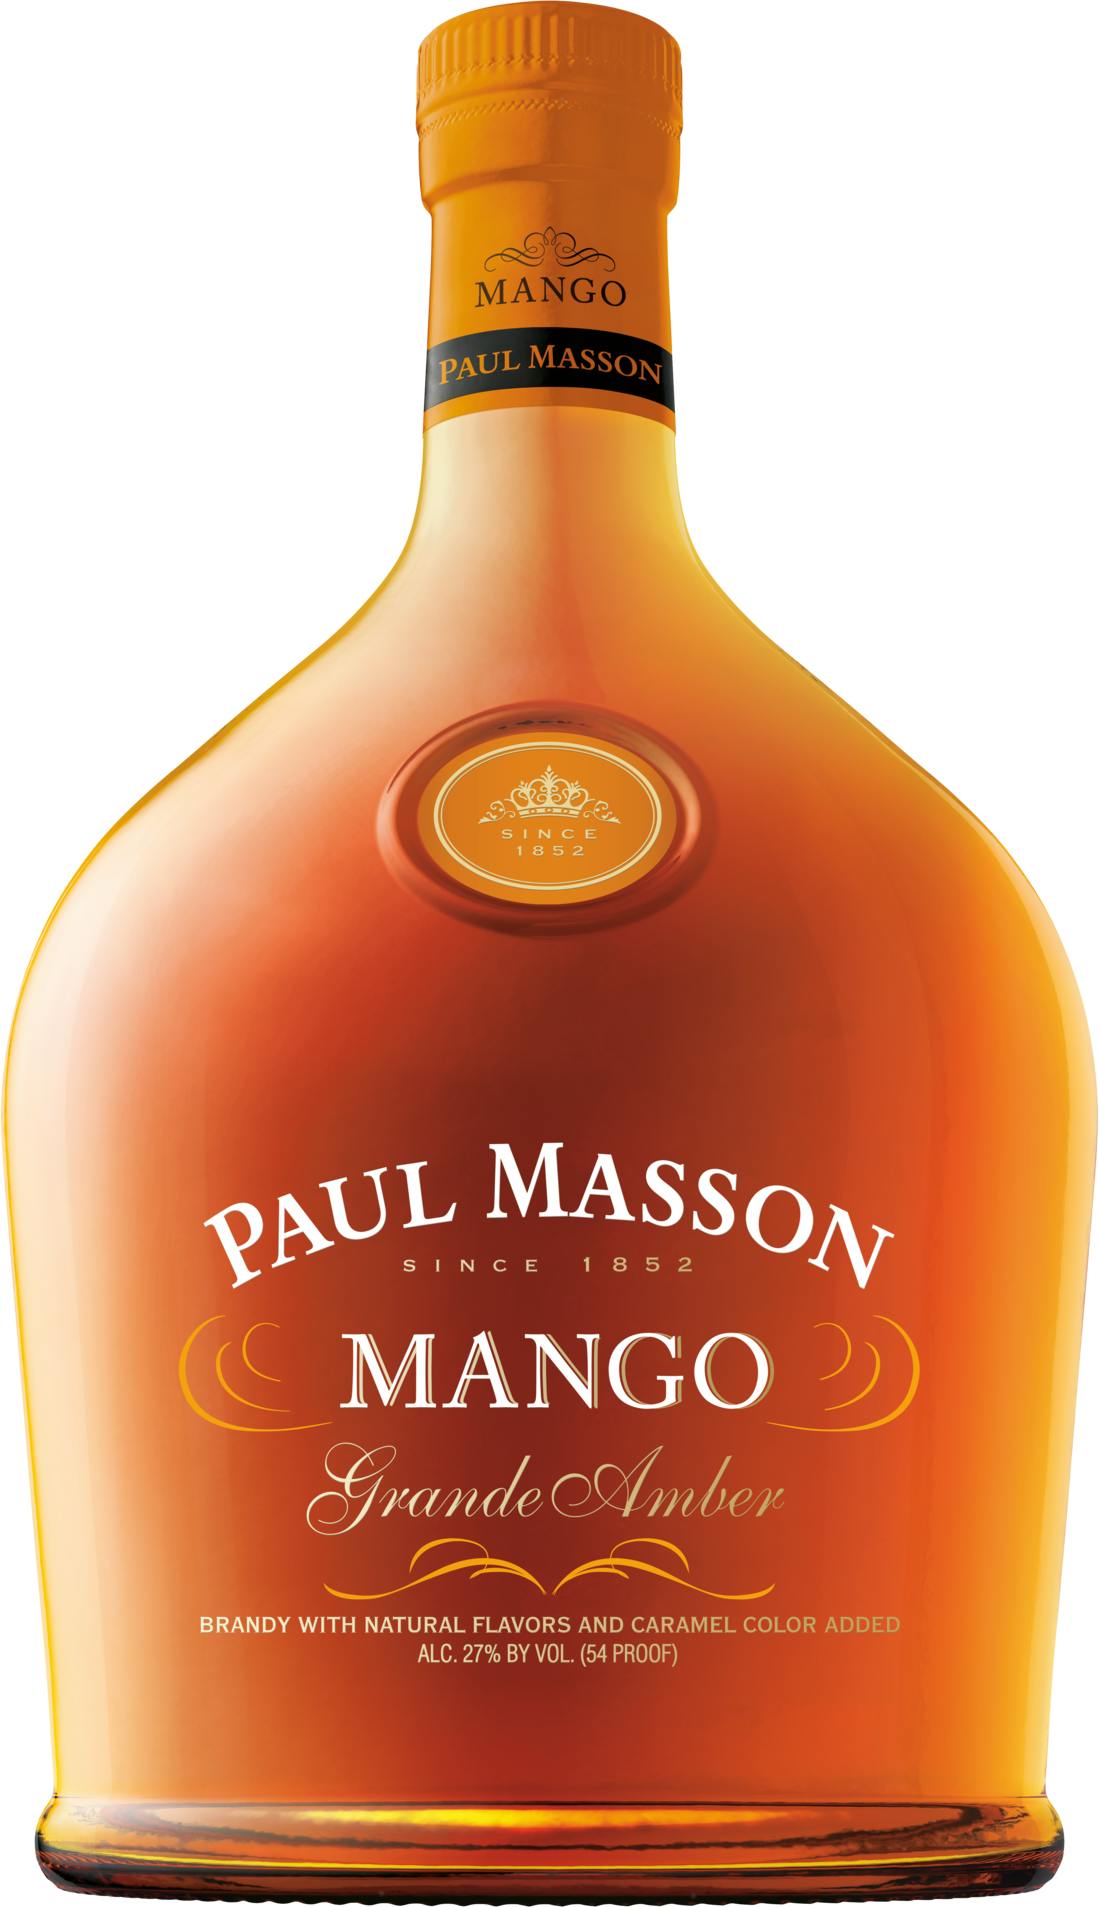 Paul Masson Grande Amber Mango Brandy - Liquor Warehouse of Freeport,  Freeport, NY, Freeport, NY